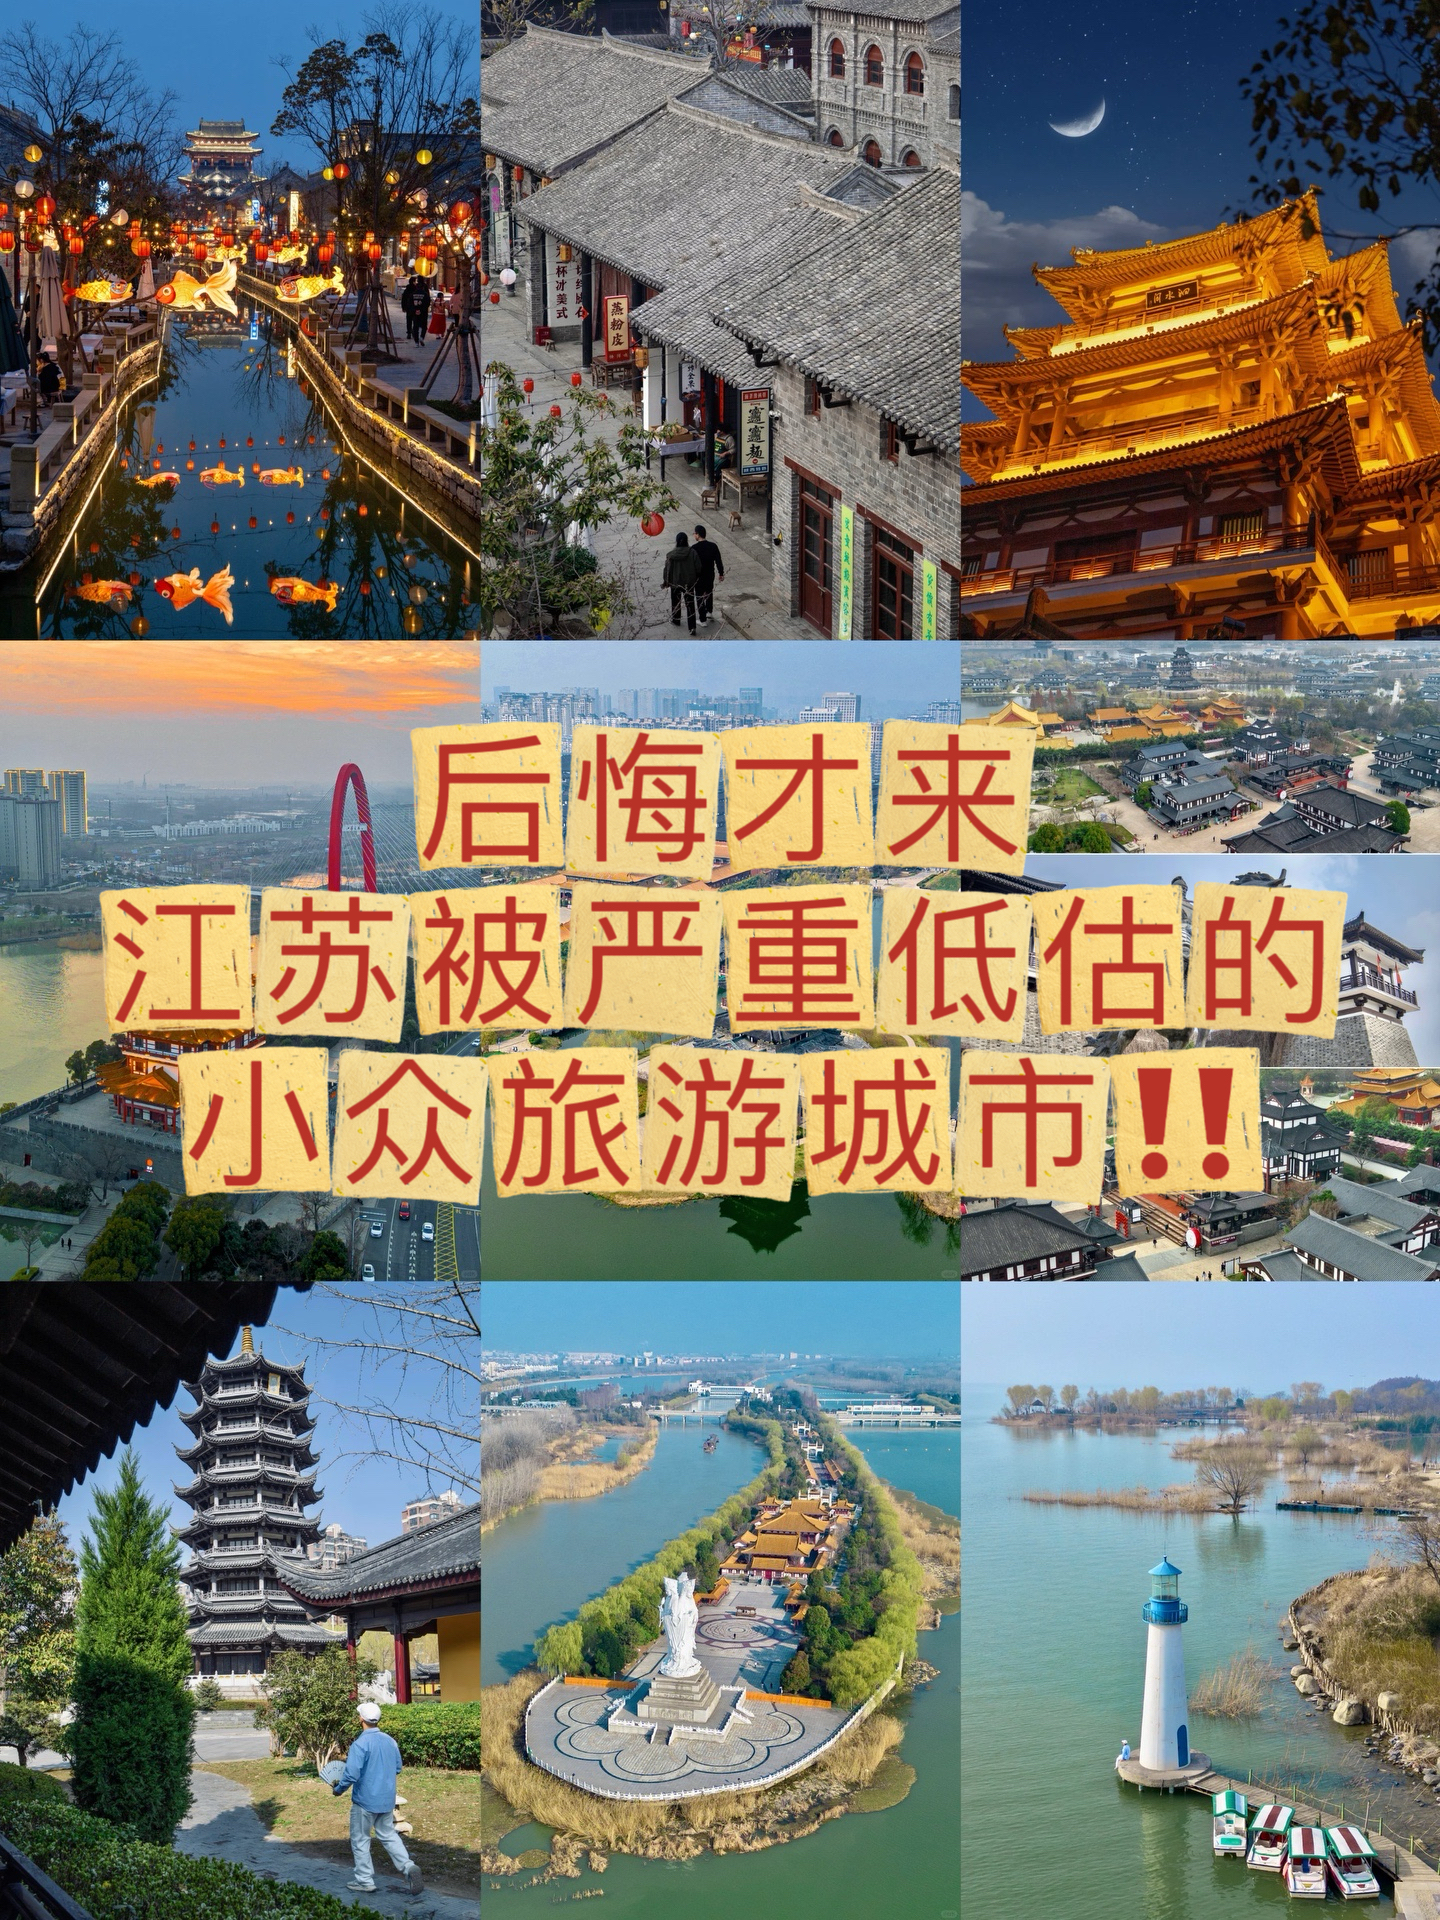 后悔才来，江苏被严重低估的小众旅游城市‼